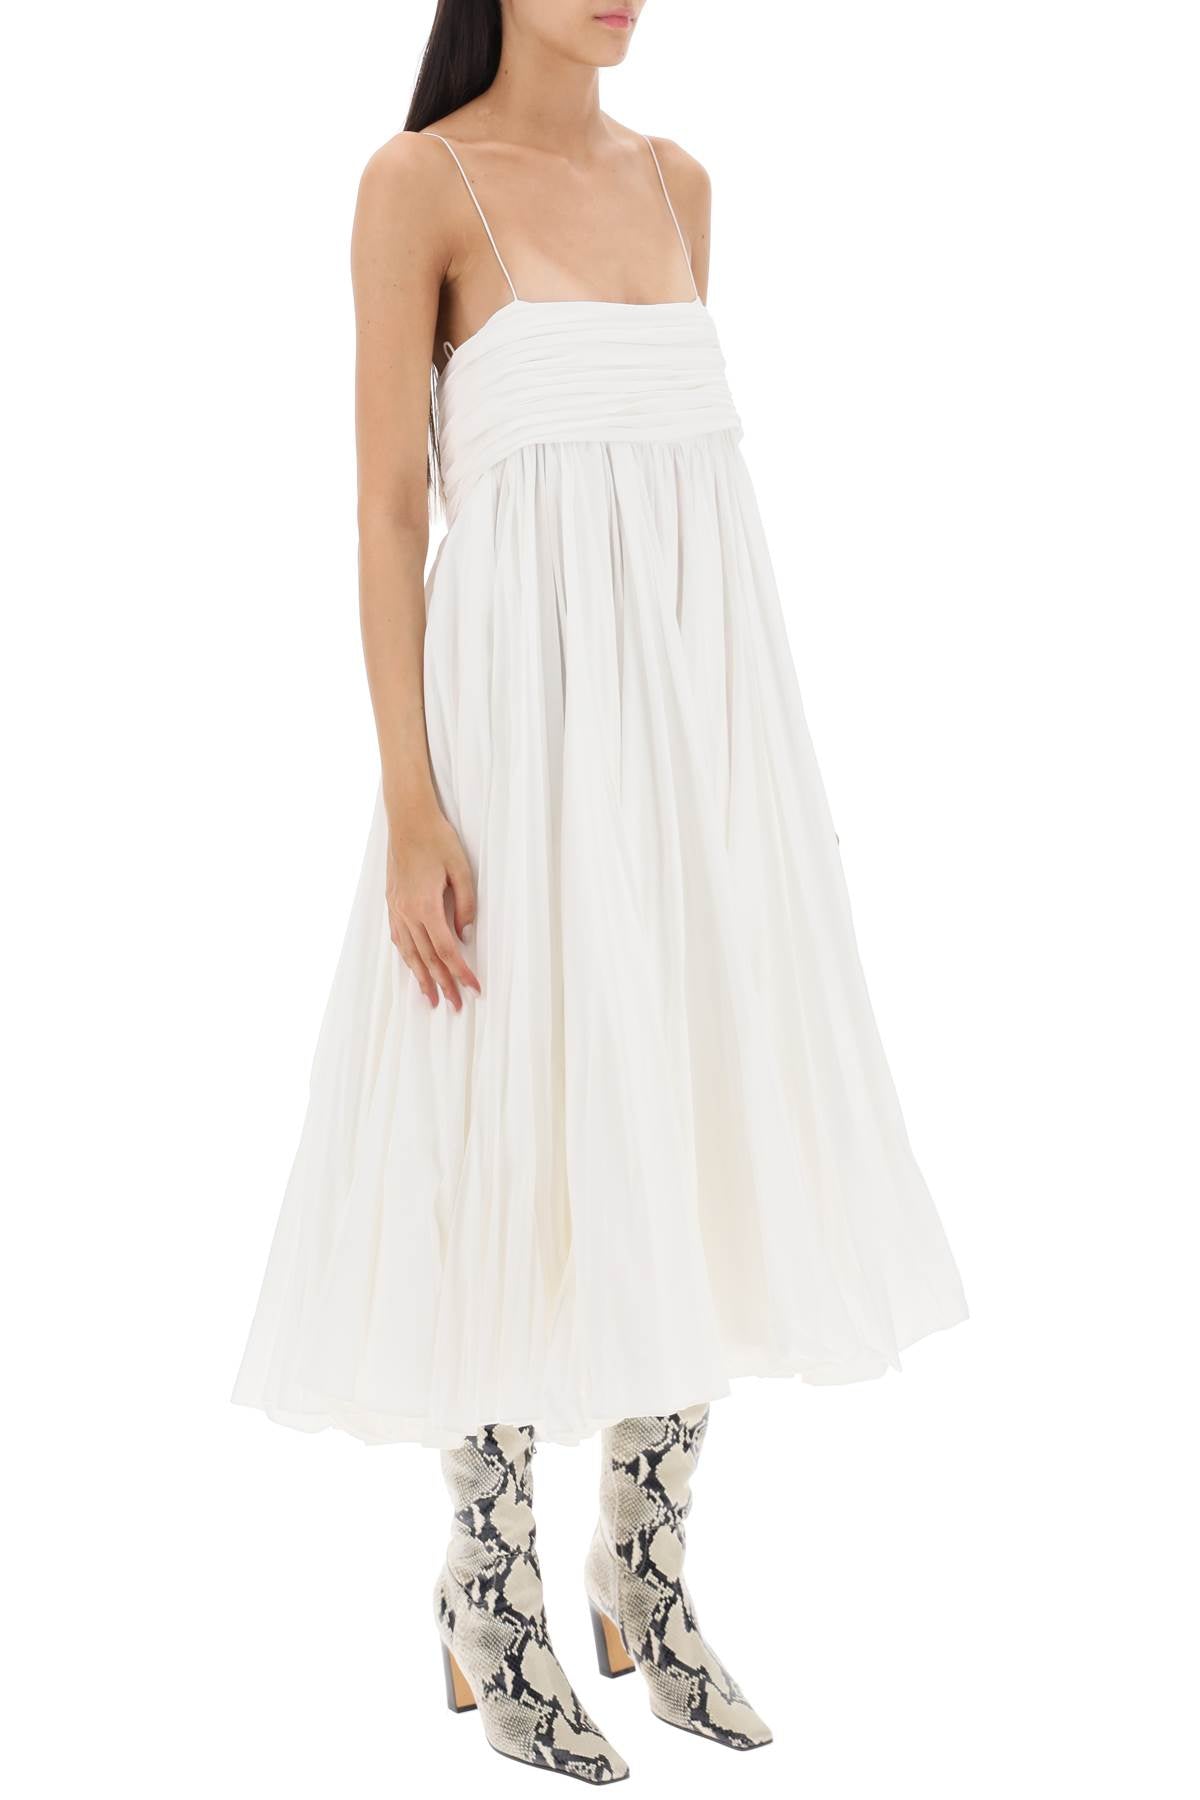 KHAITE Effortlessly Stylish Empire-Waist White Cotton Dress for Women